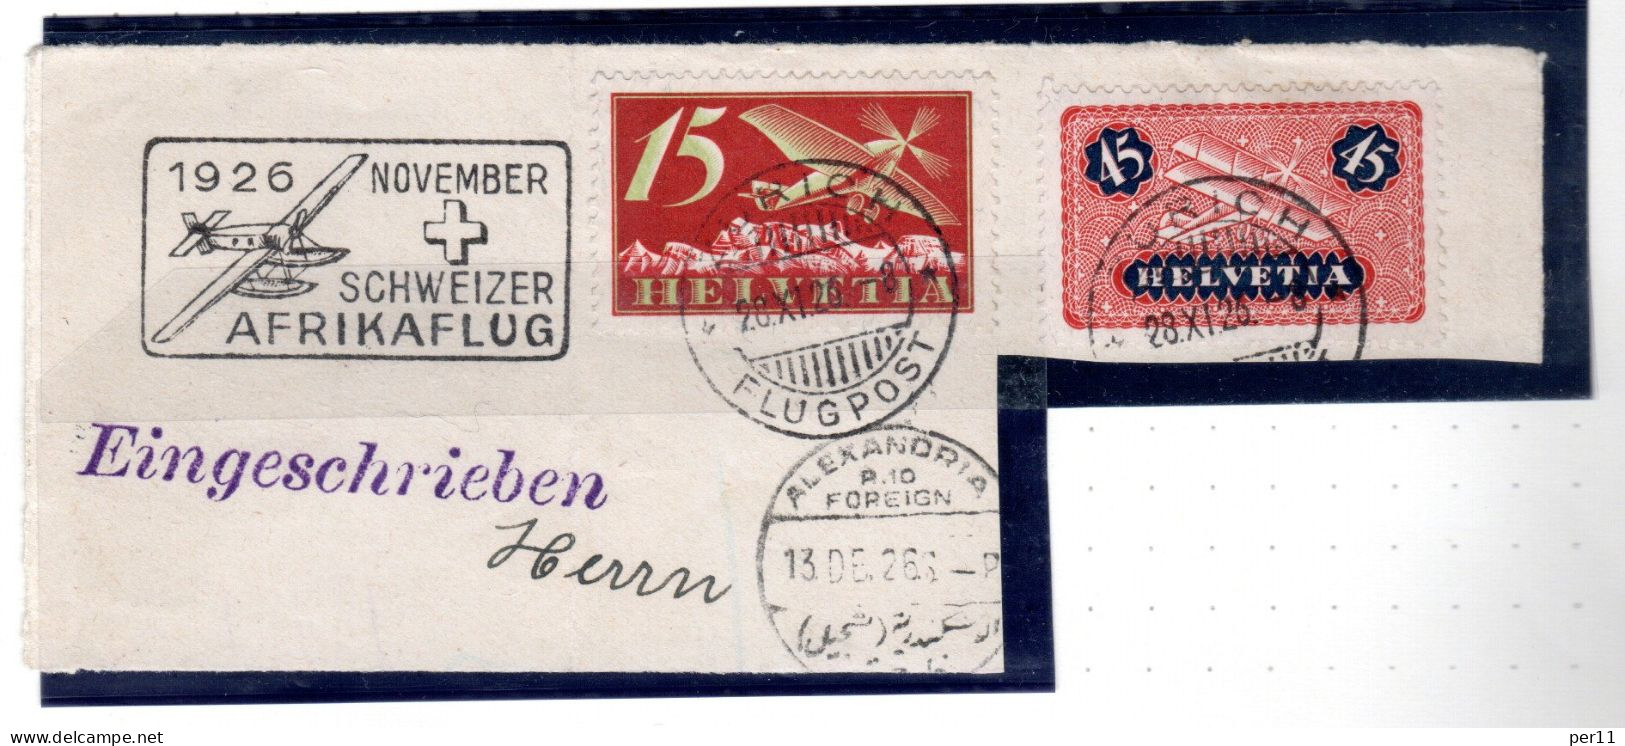 1926 November Afrikaflug , Part Of Registered Letter  (ch395) - Usados